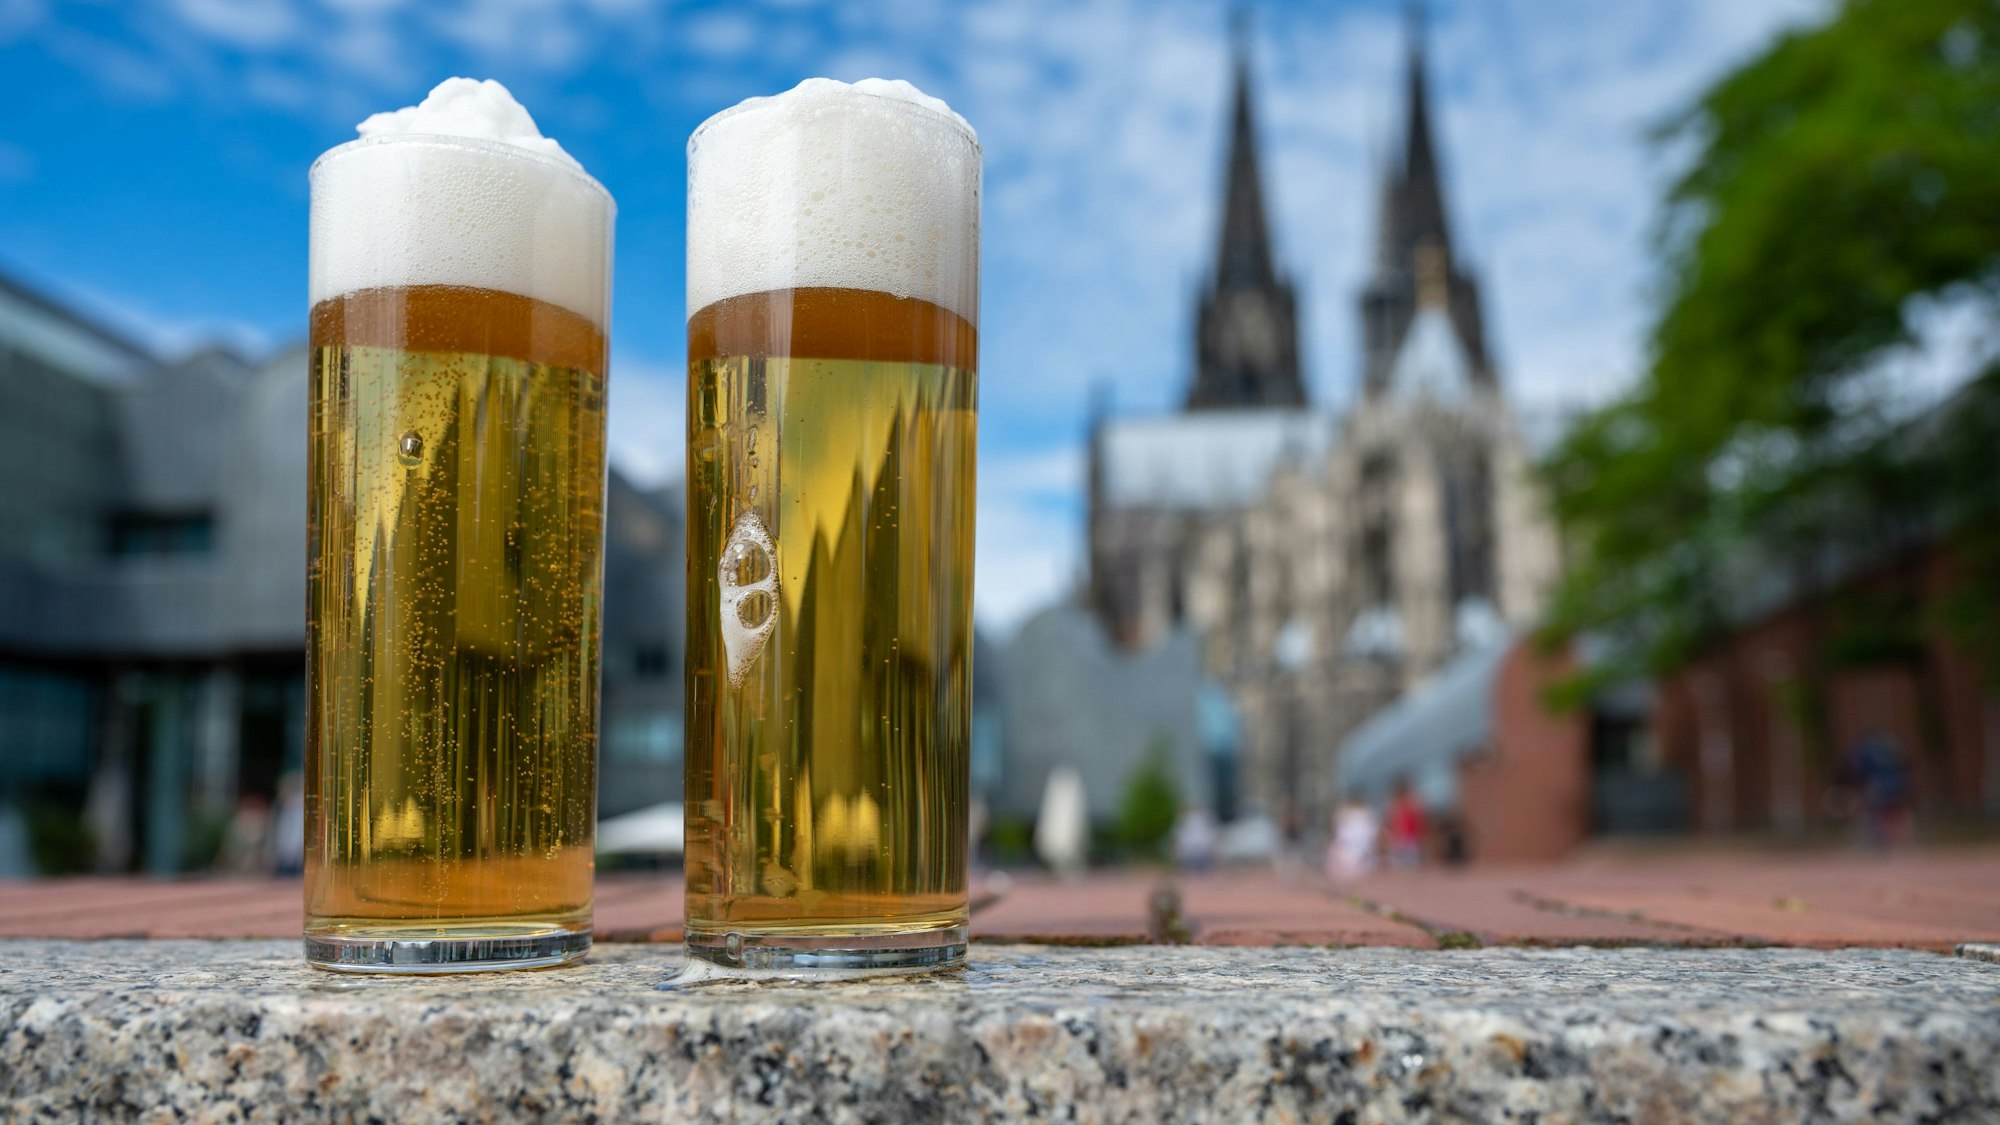 Kölsch im Glas, im Hintergrund ist der Kölner Dom zu sehen.